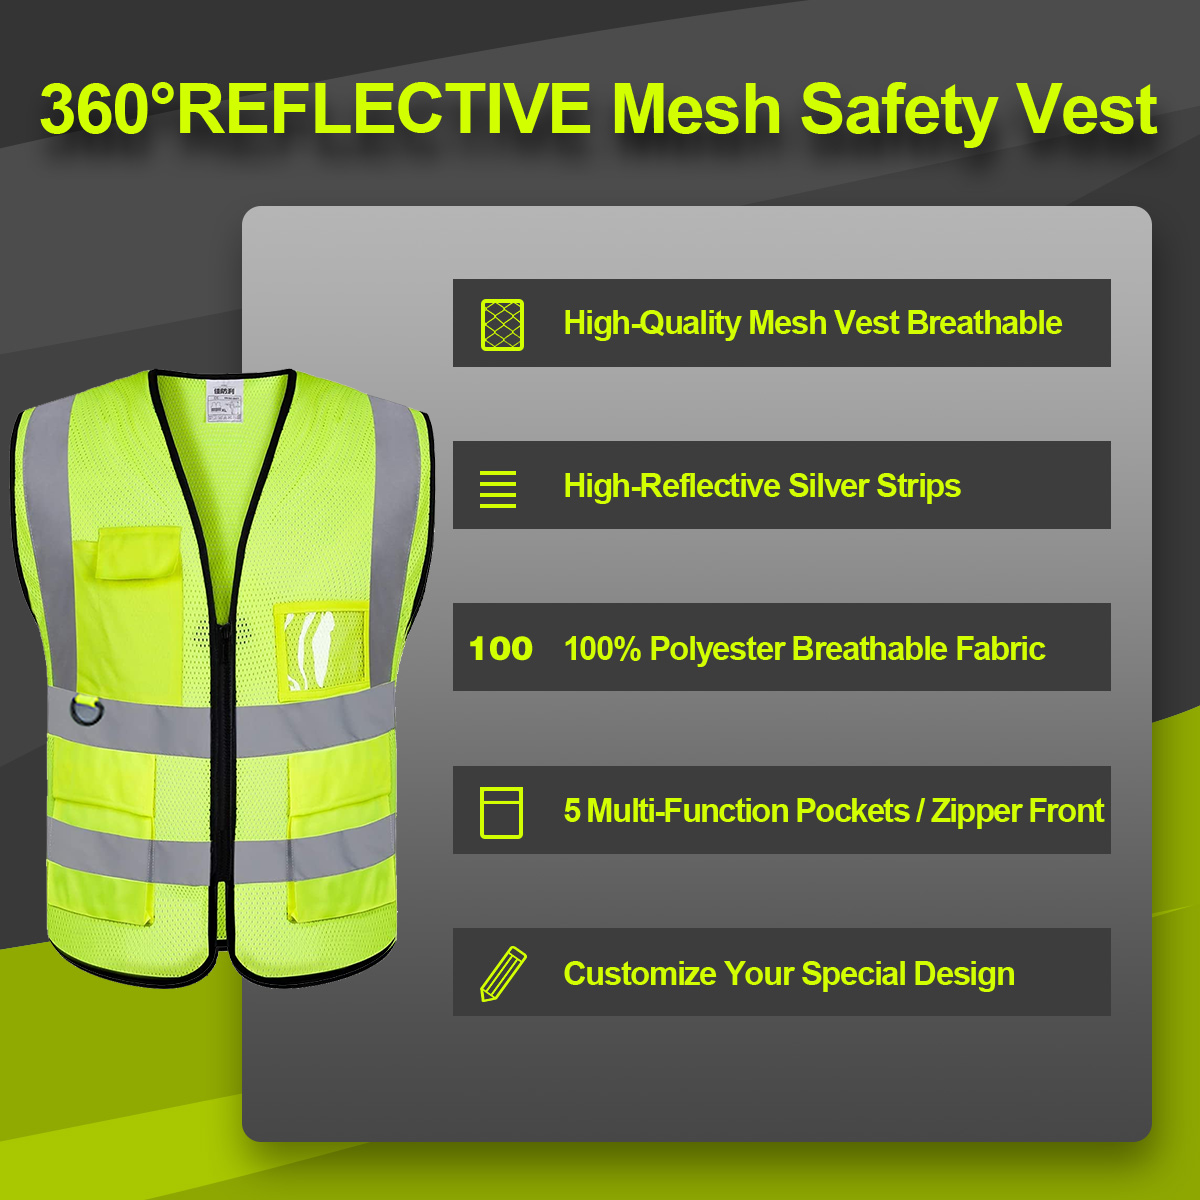 360°REFLECTIVE Mesh Safety Vest